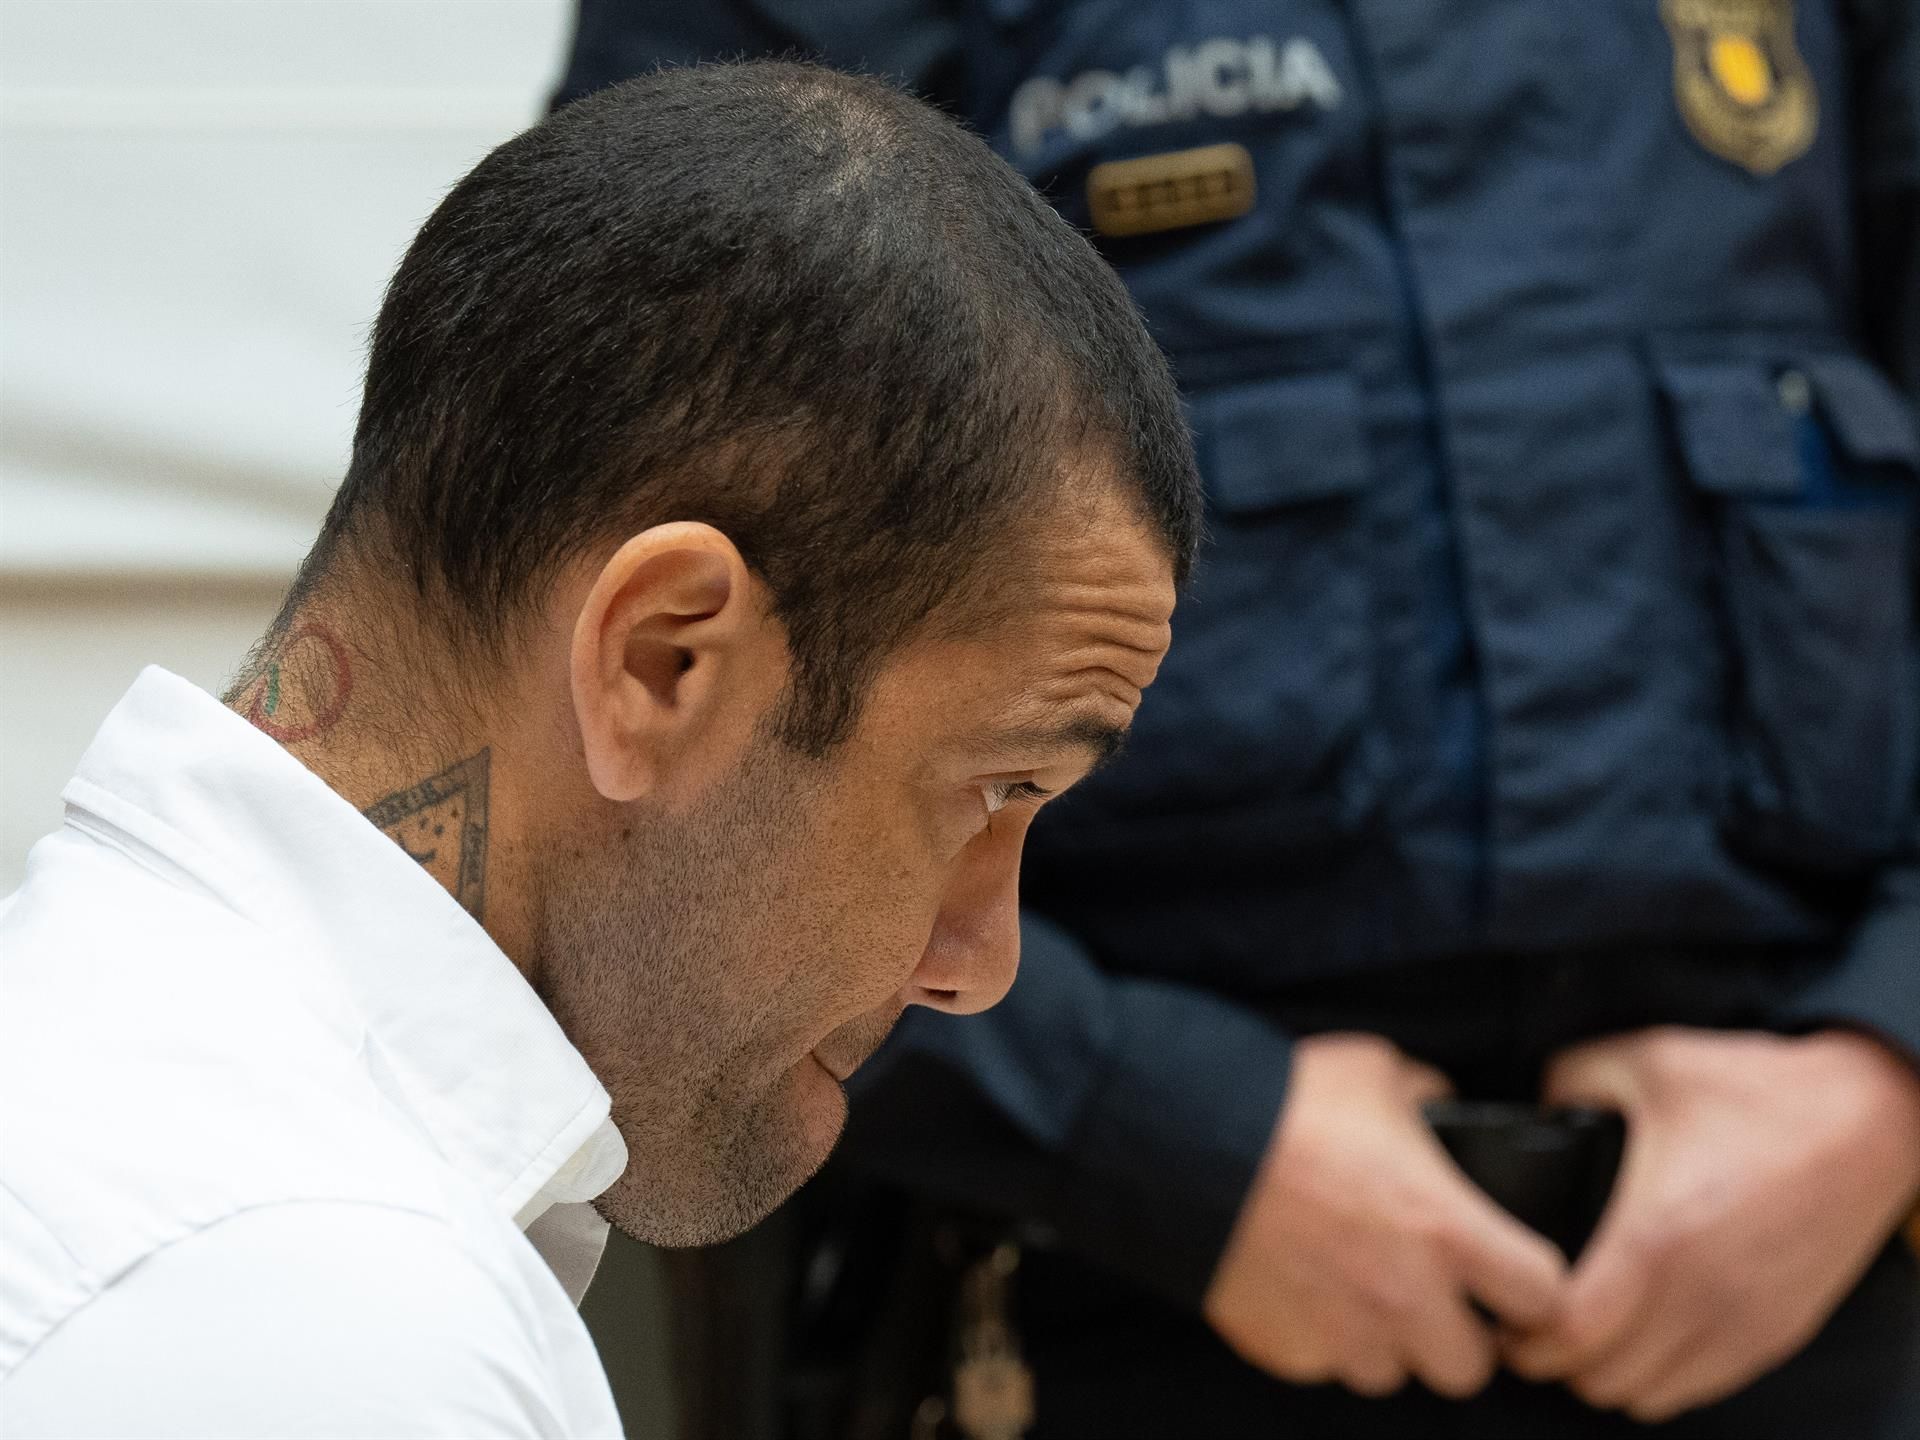 Dani Alves podrá salir de prisión si paga una fianza de un millón de euros. Foto: Europa Press.